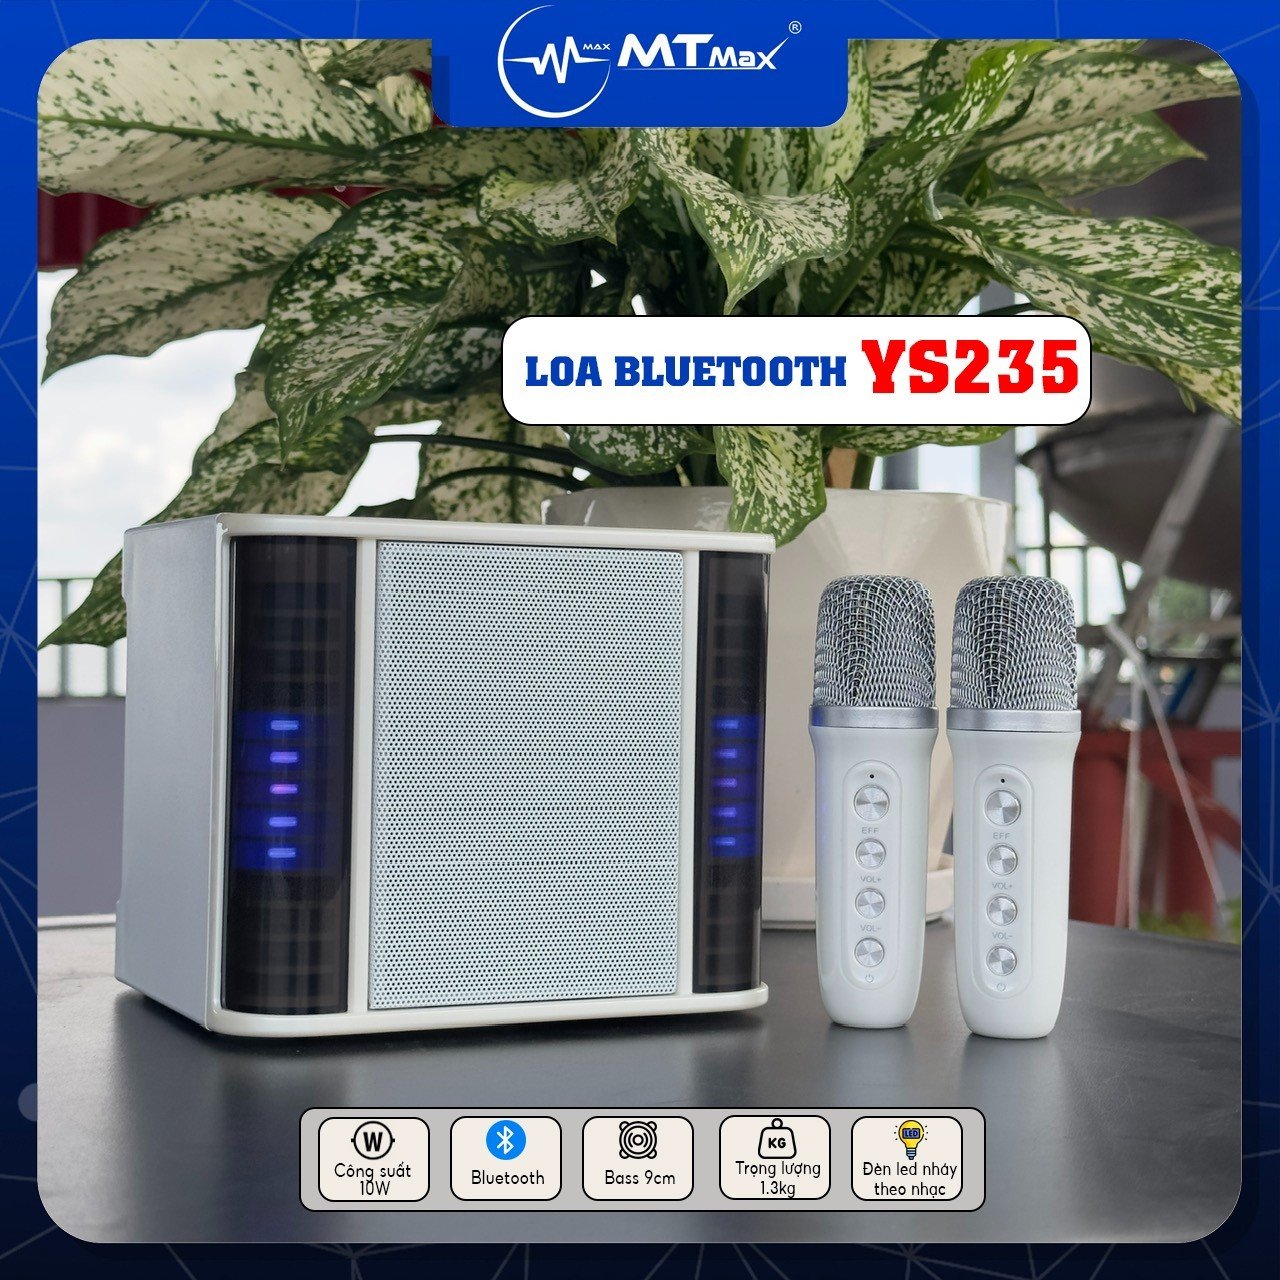 Loa Bluetooth YS235 - Karaoke, Nghe Nhạc, Kết Nối Micro Bluetooth, Cổng USB, AUX, Thẻ Nhớ, Công Suất 10W, Bass 9cm Hàng Chính Hãng